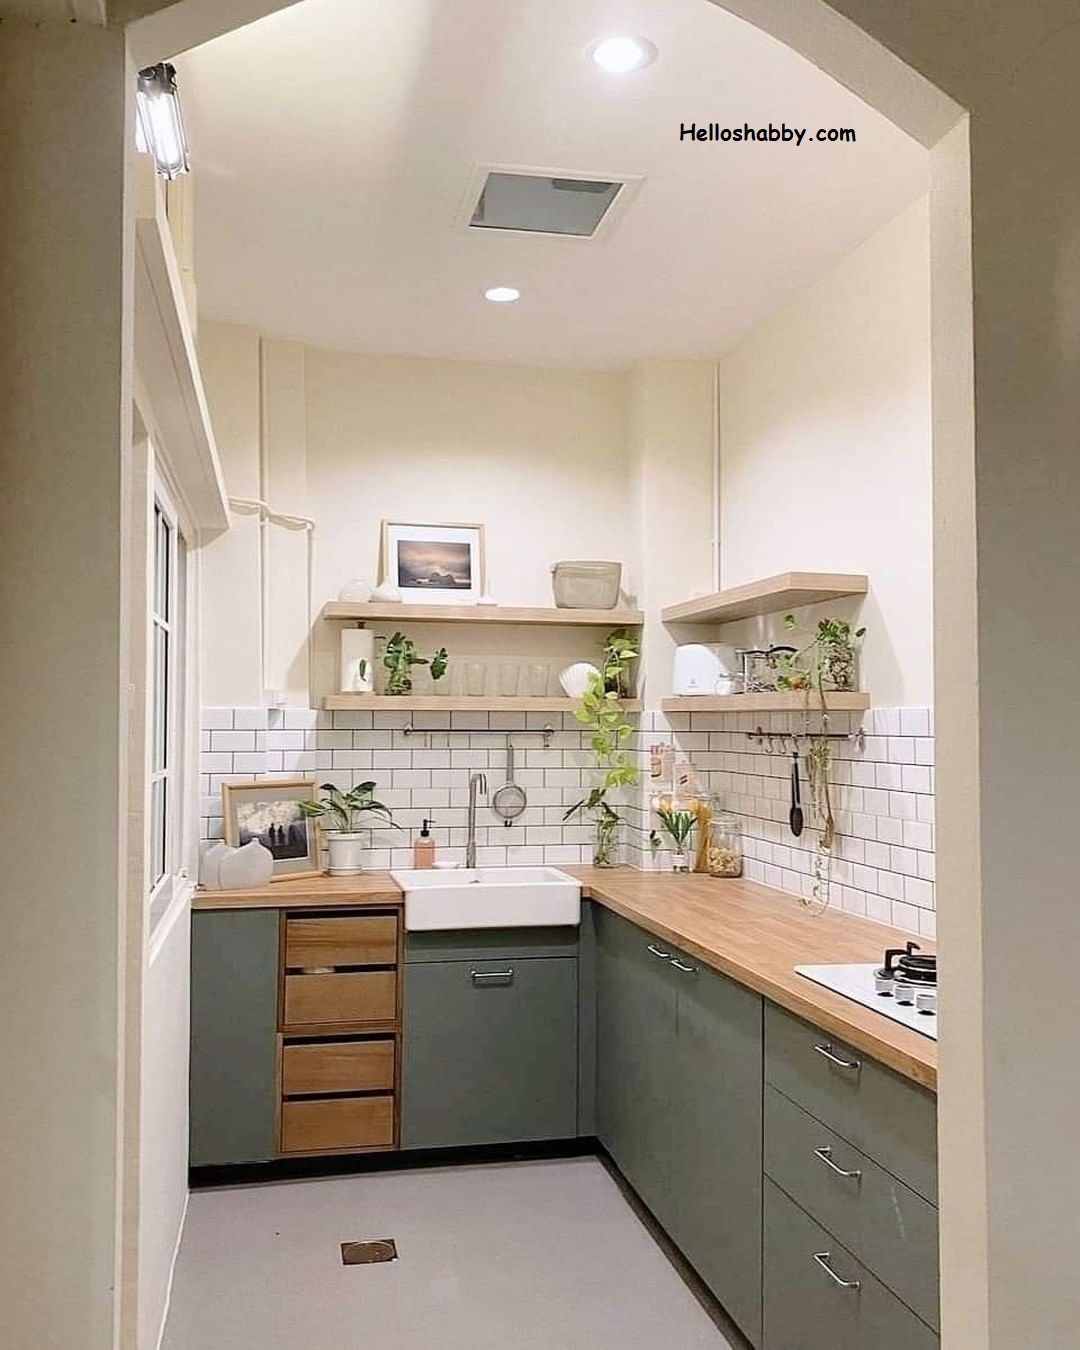 7 Inspirasi Desain Dapur Mungil Ukuran 2 X 1 Meter Bentuk L Dengan Beragam Warna HelloShabbycom Interior And Exterior Solutions